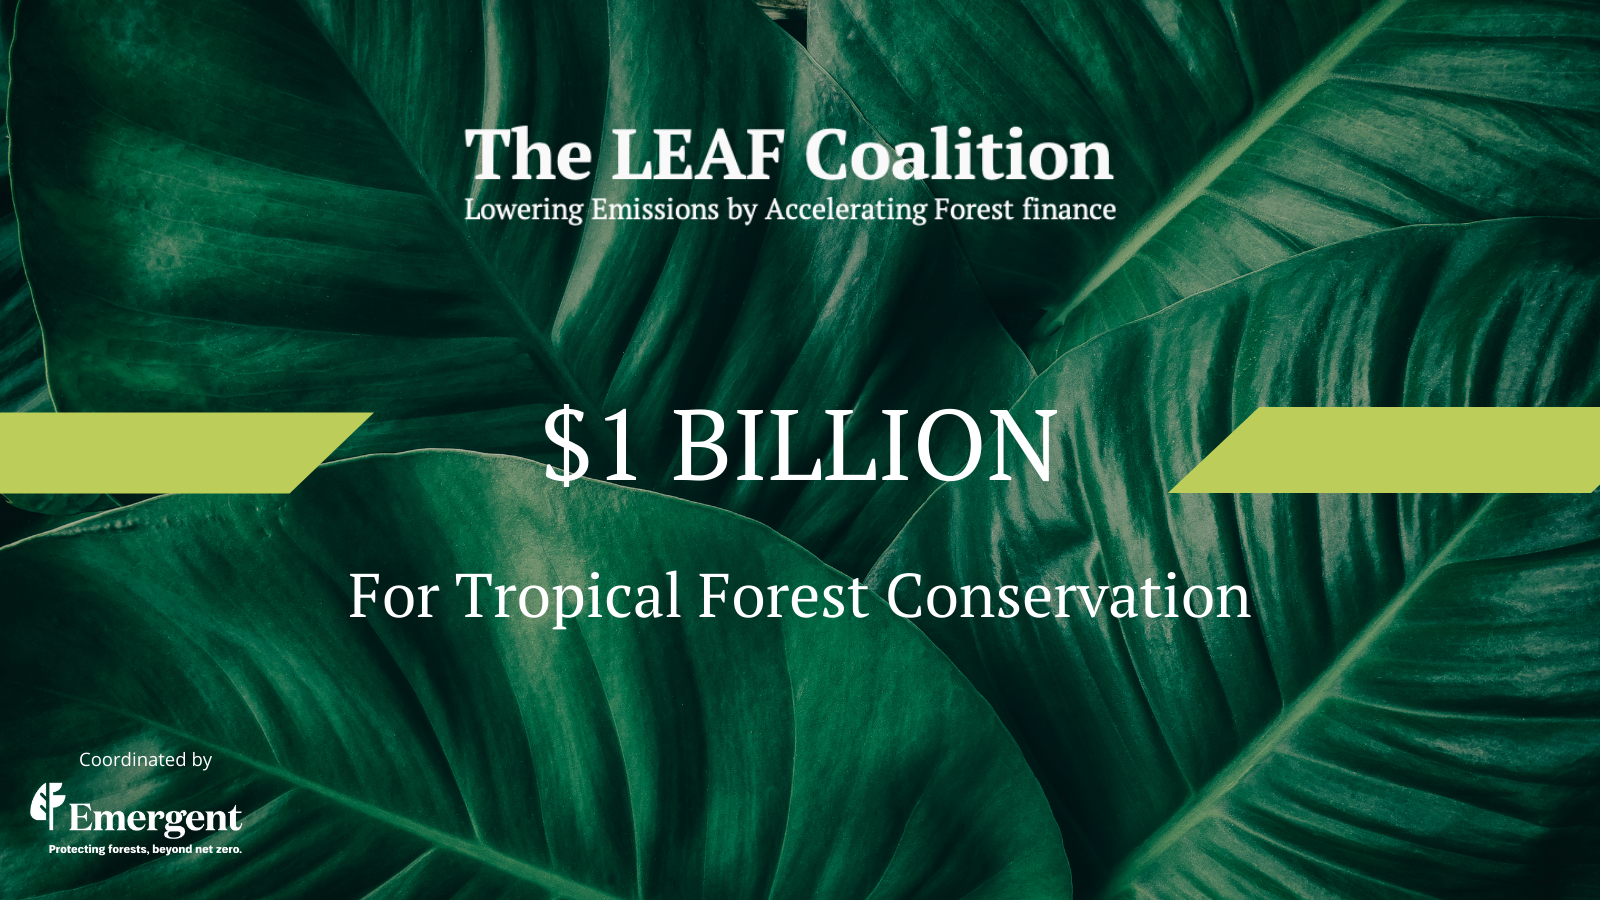 02 NOV 2021: LEAF Coalition Mobilizes $1 Billion for Tropical Forest Conservation